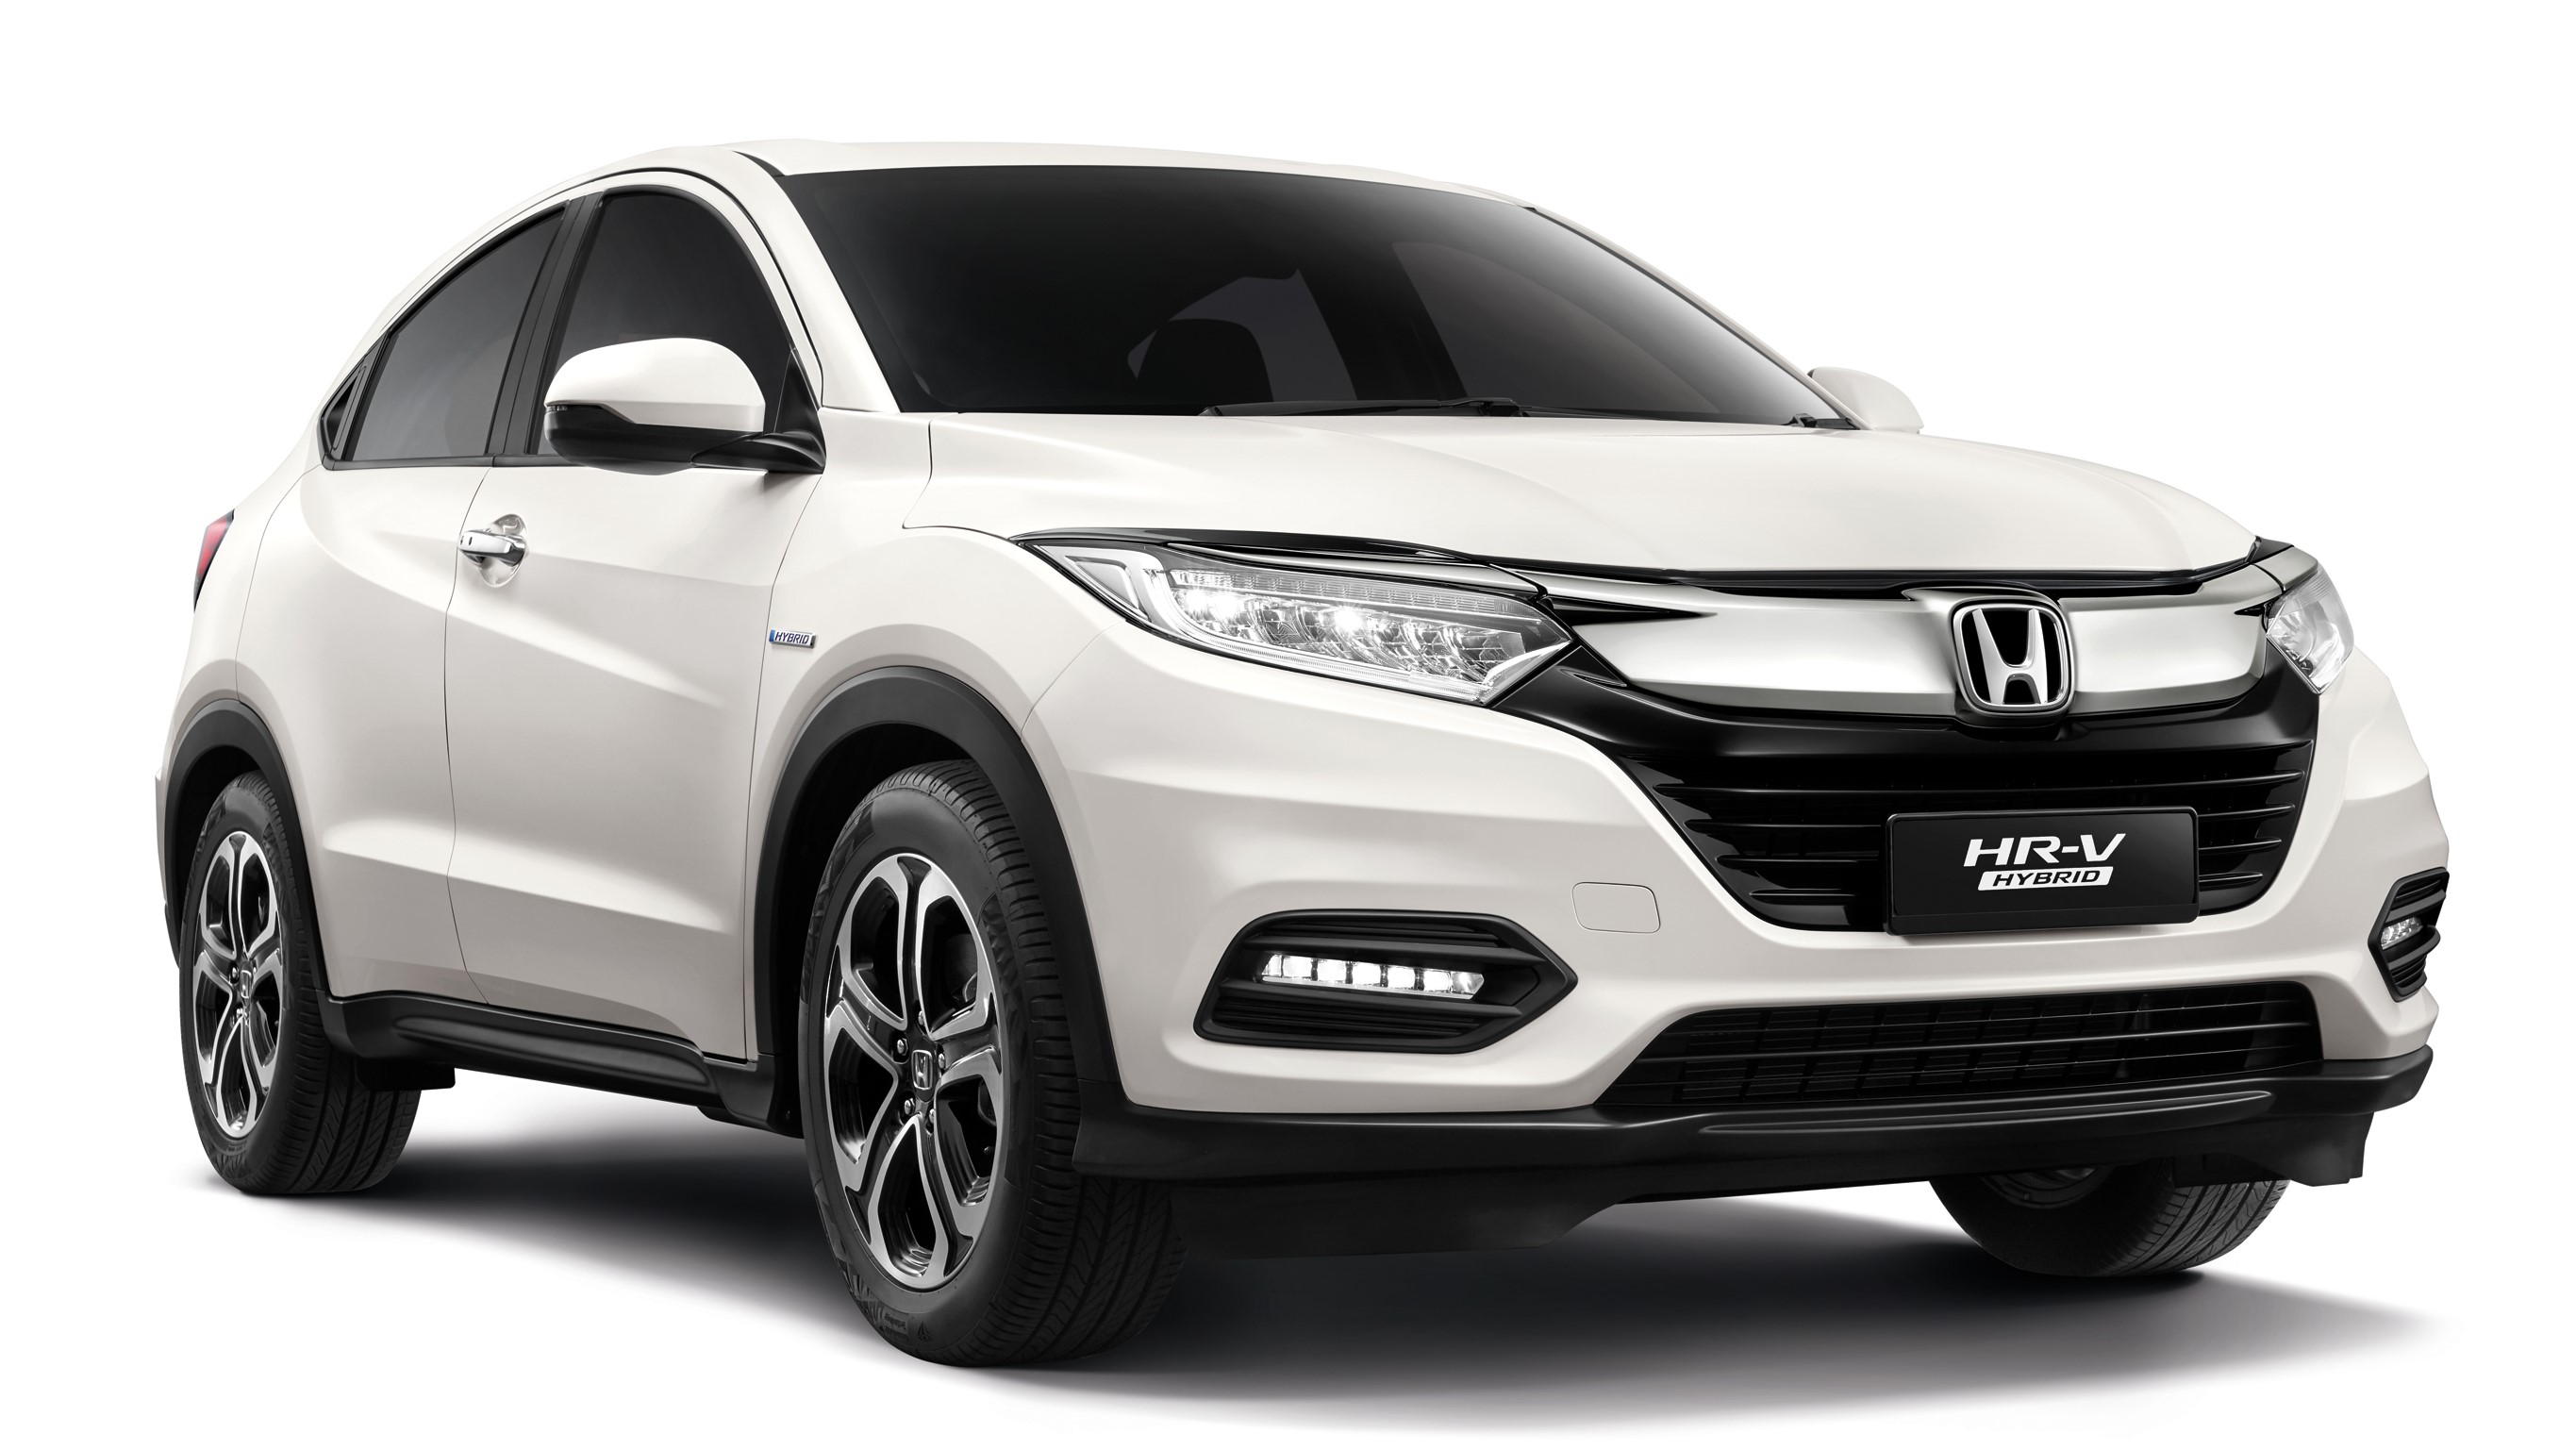 2021 Honda HR-V Hybrid price specs Malaysia